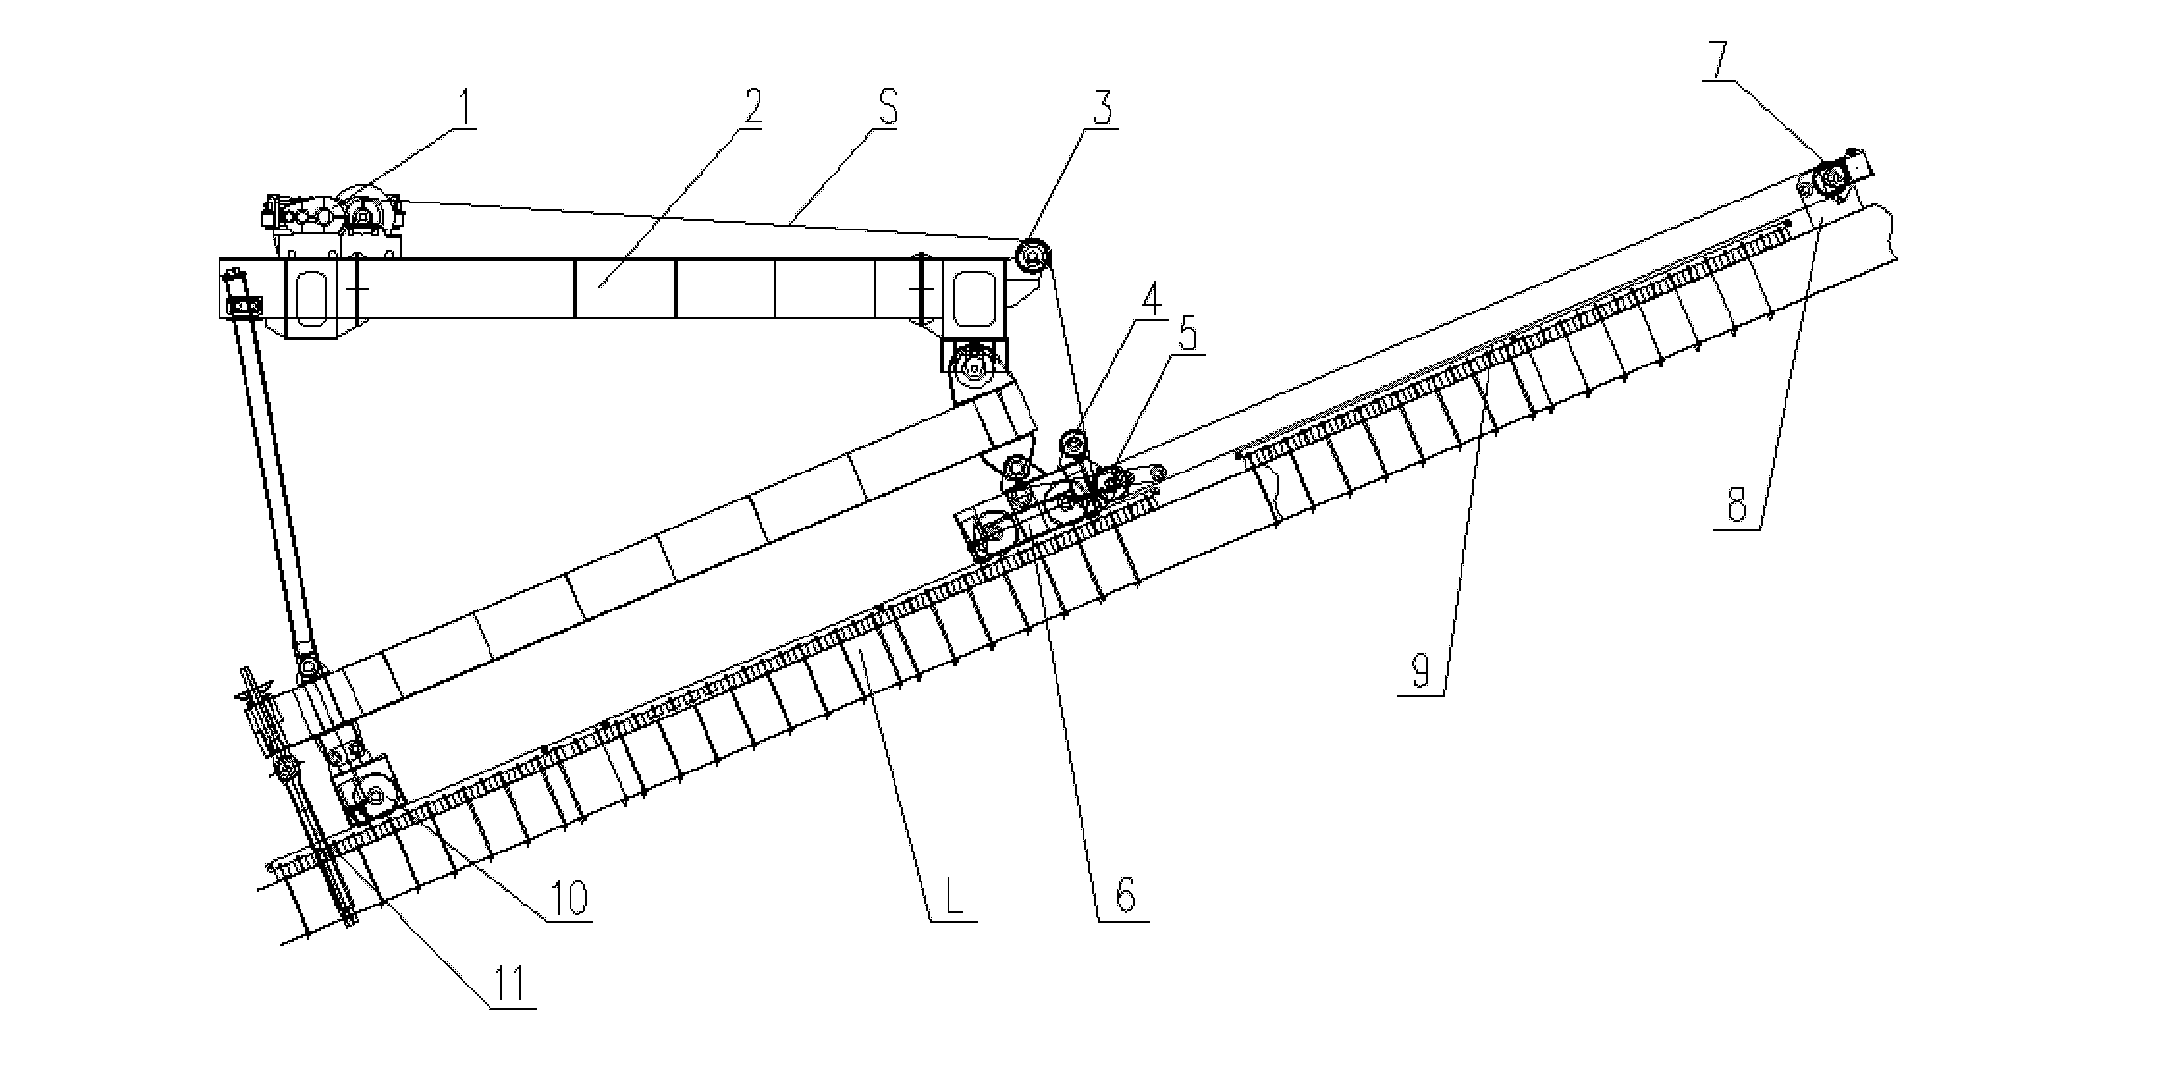 Traction running mechanism for climbing girder crane